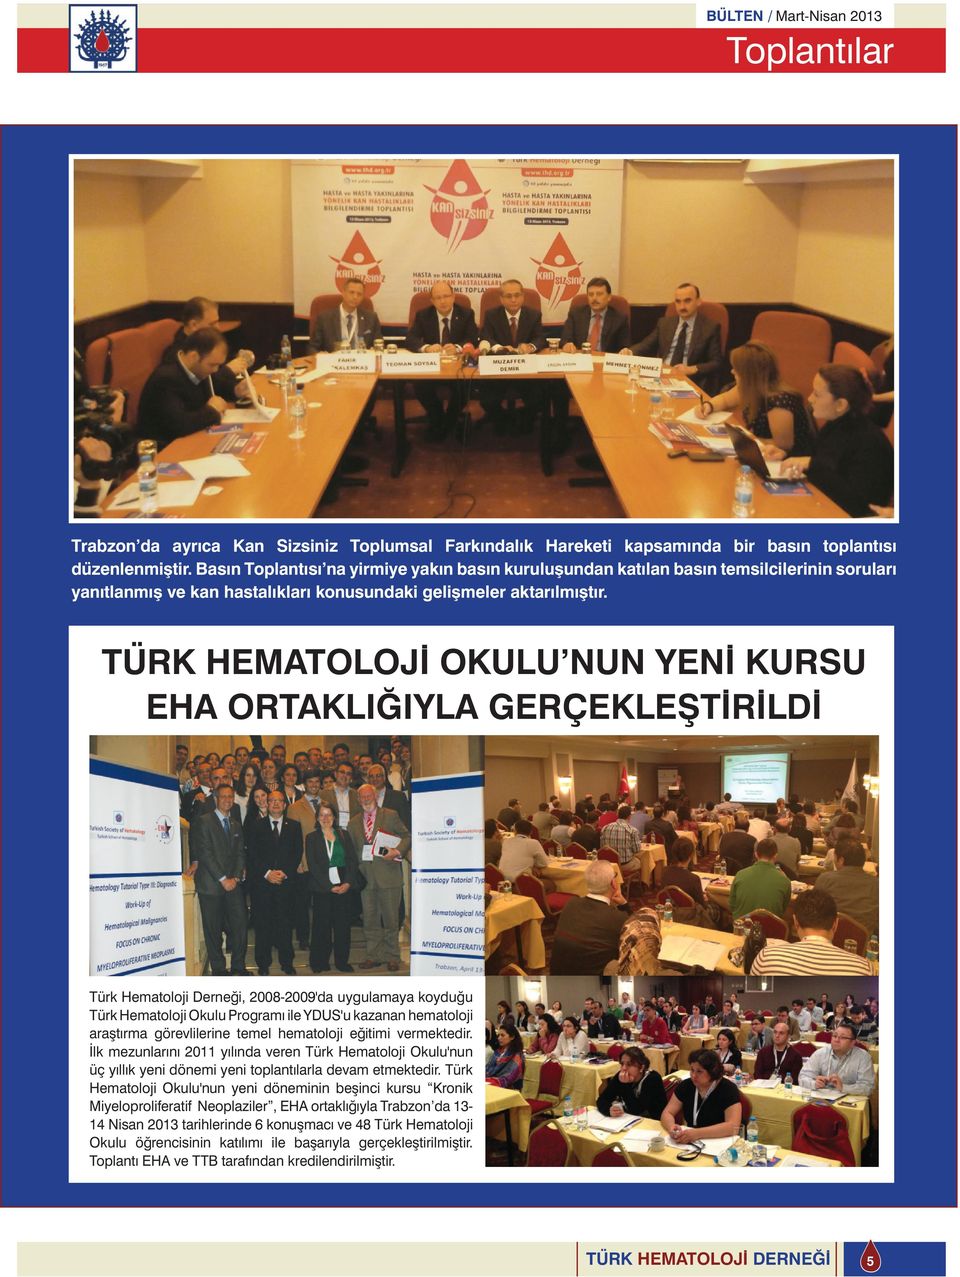 TÜRK HEMATOLOJİ OKULU NUN YENİ KURSU EHA ORTAKLIĞIYLA GERÇEKLEŞTİRİLDİ Türk Hematoloji Derneği, 2008-2009'da uygulamaya koyduğu Türk Hematoloji Okulu Programı ile YDUS'u kazanan hematoloji araştırma